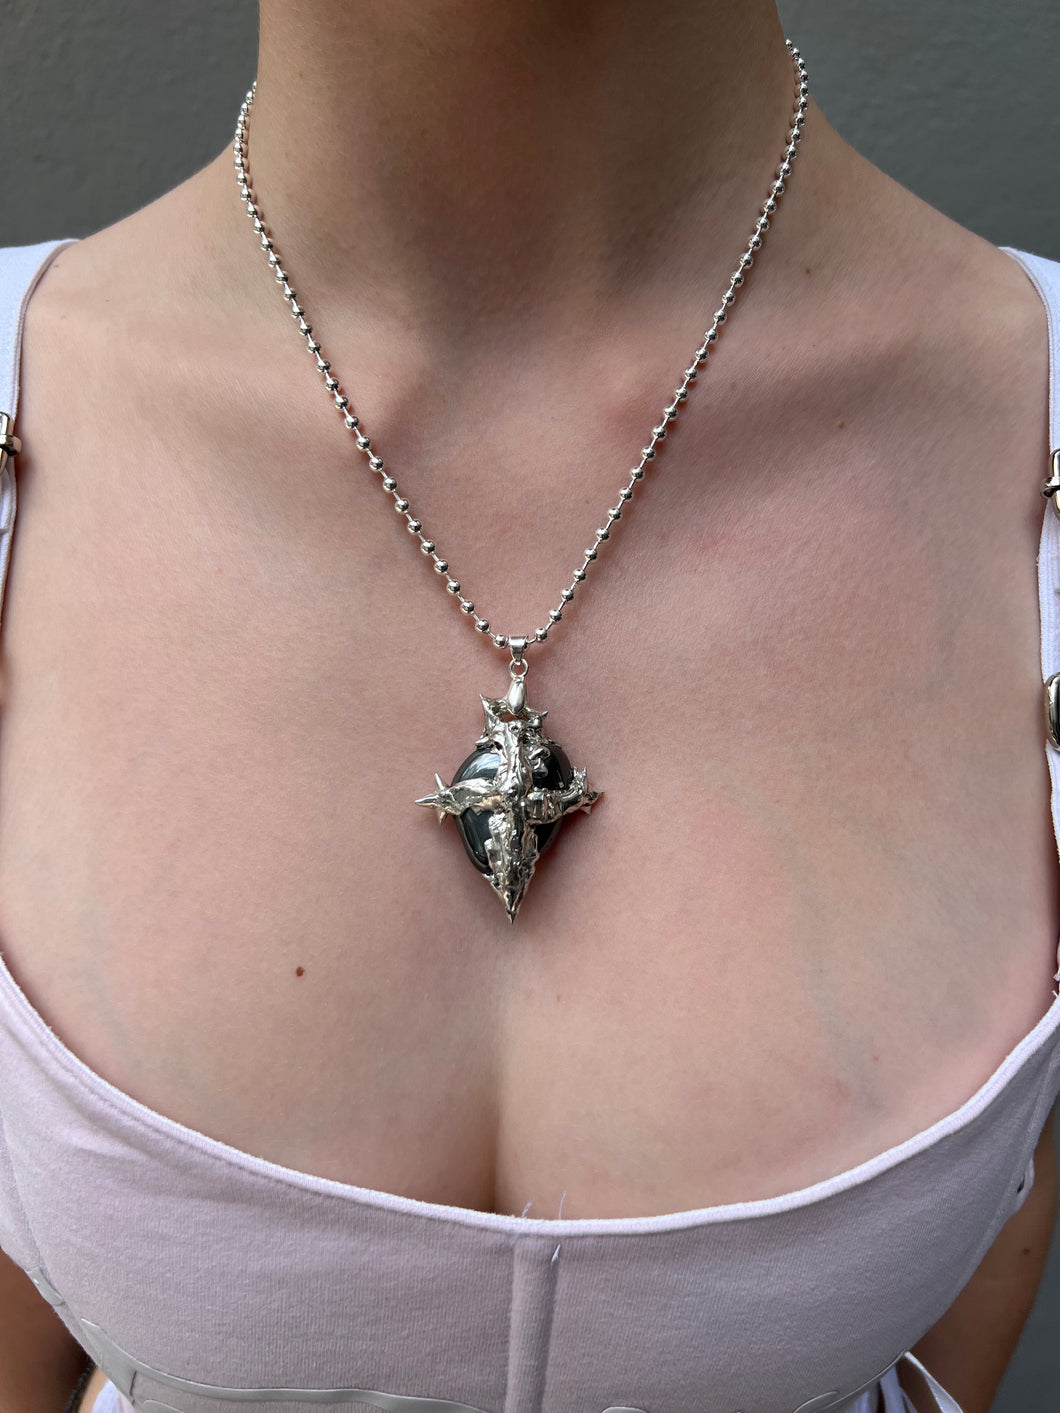 Tragebild von Xullery Hematite Necklace vor einem grauen Hintergrund.